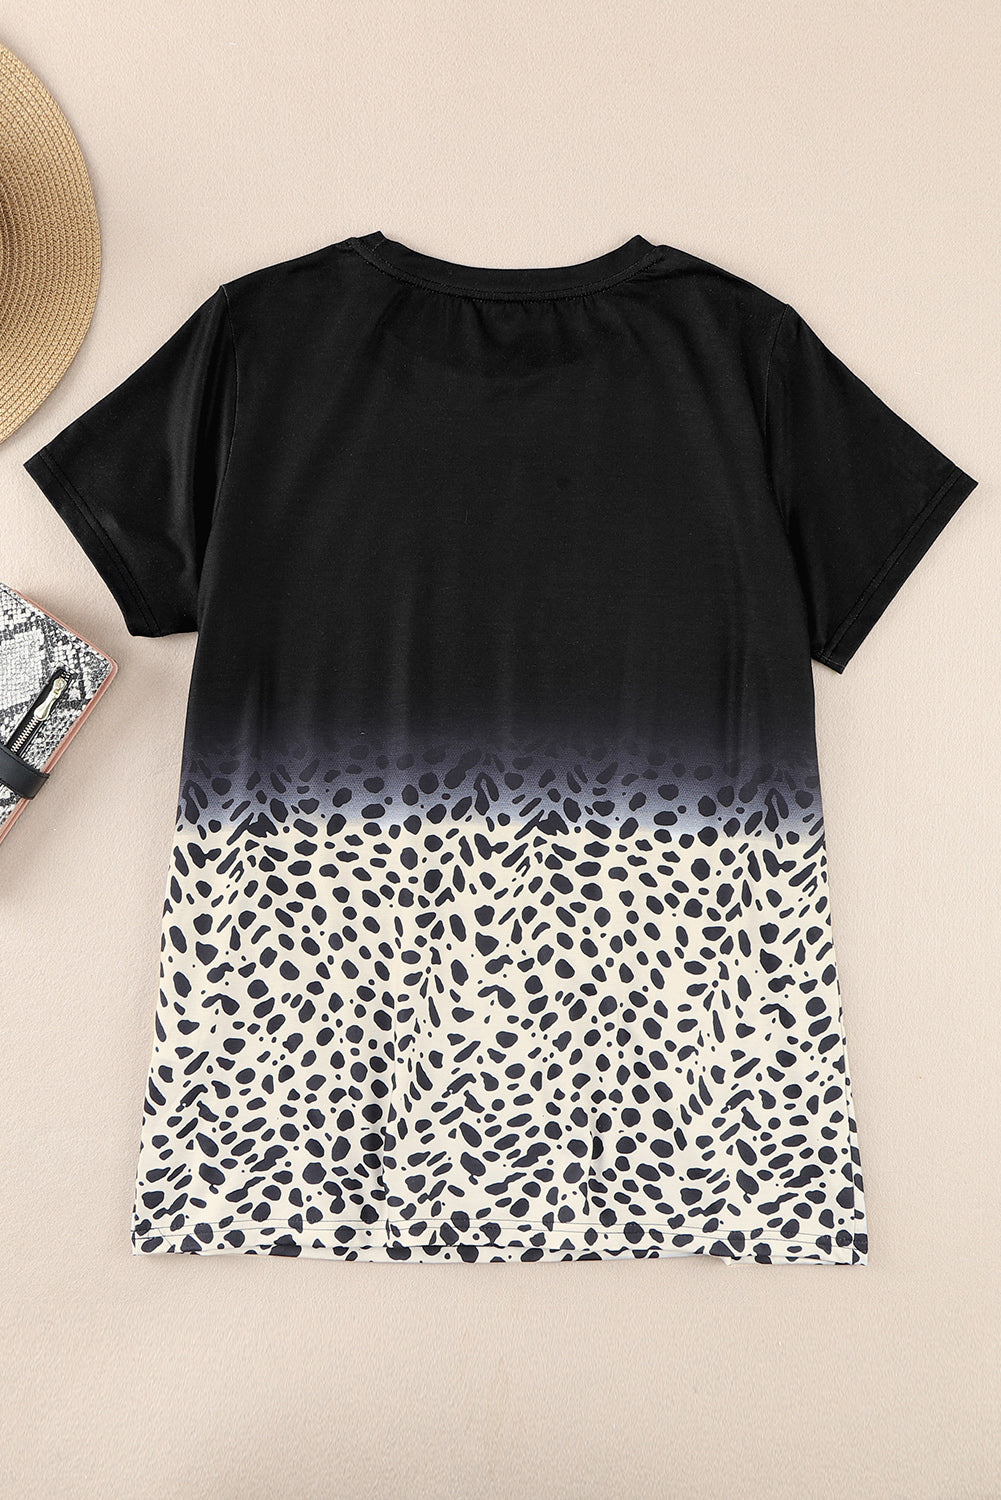 T-shirt noir à imprimé léopard ombré